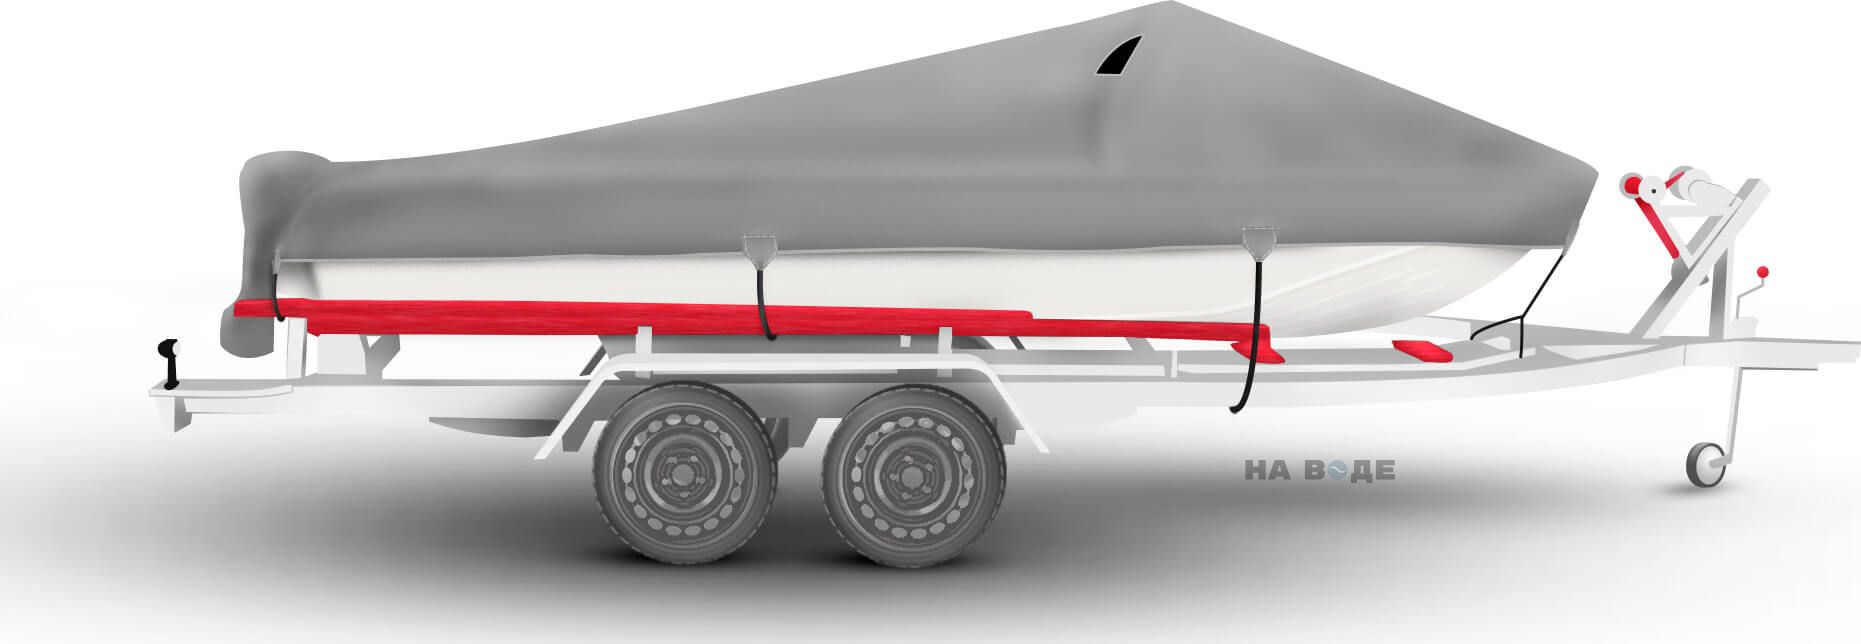 Транспортировочный тент на лодку Казанка-5М комплектация C накрытием мотора - фото 3